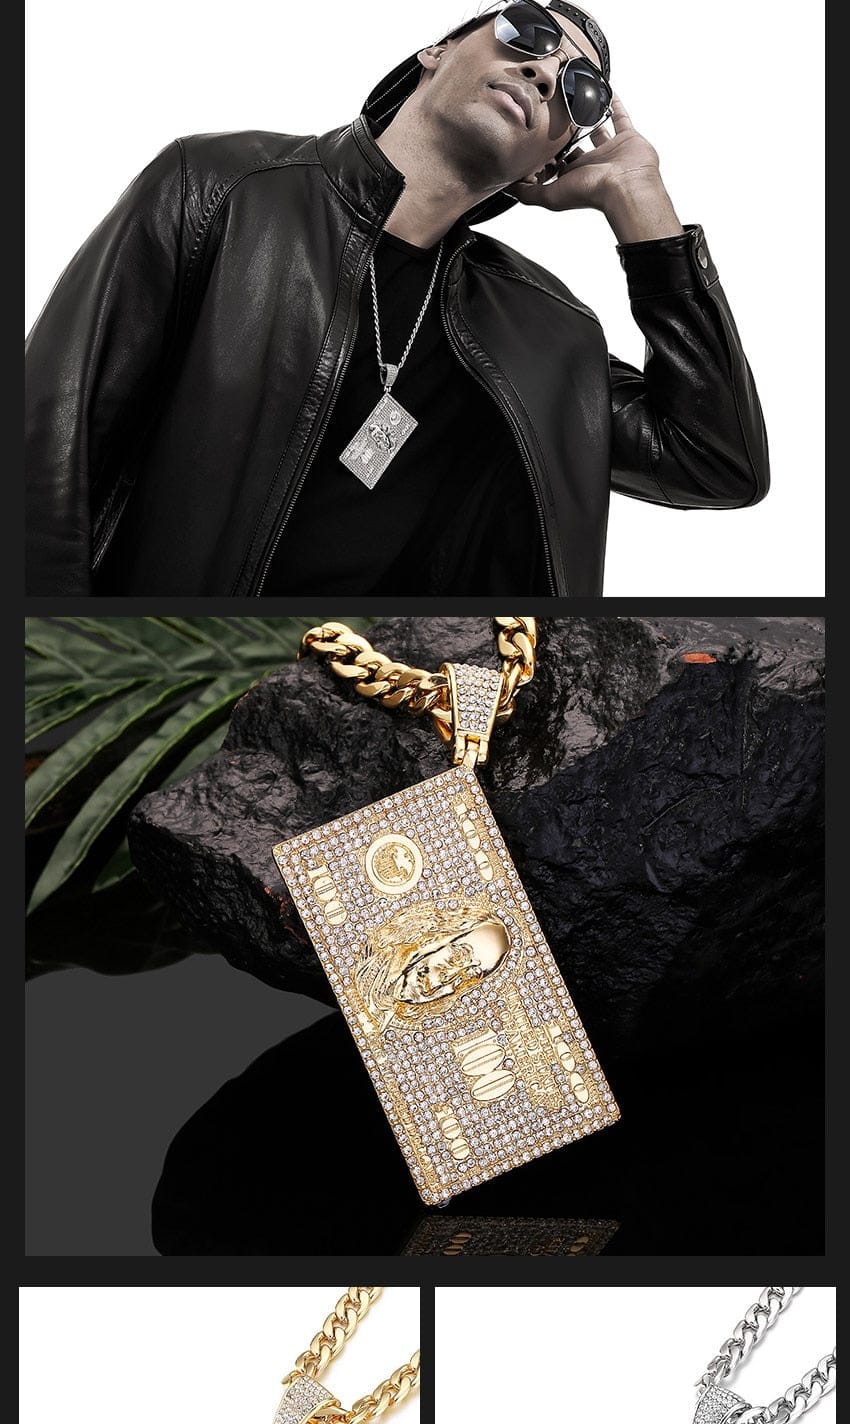 VVS Jewelry hip hop jewelry Dollar Bill Franklin Head Pendant